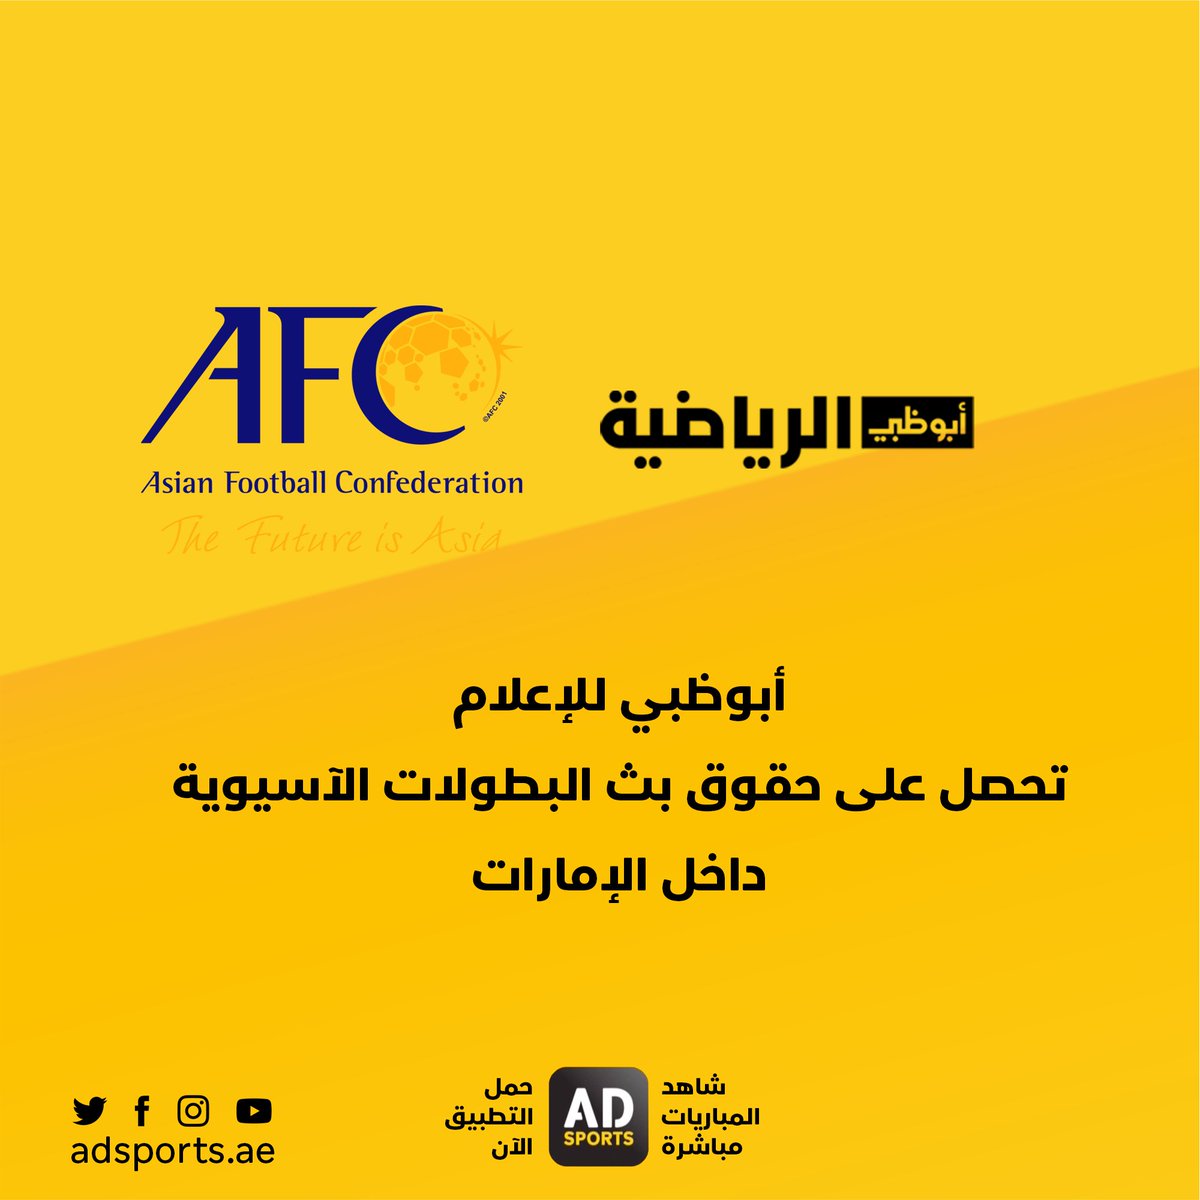 قناة أبوظبي الرياضية On Twitter أبوظبي الرياضية تحصل على حقوق بث البطولات الاسيوية حتى 2024 داخل الإمارات